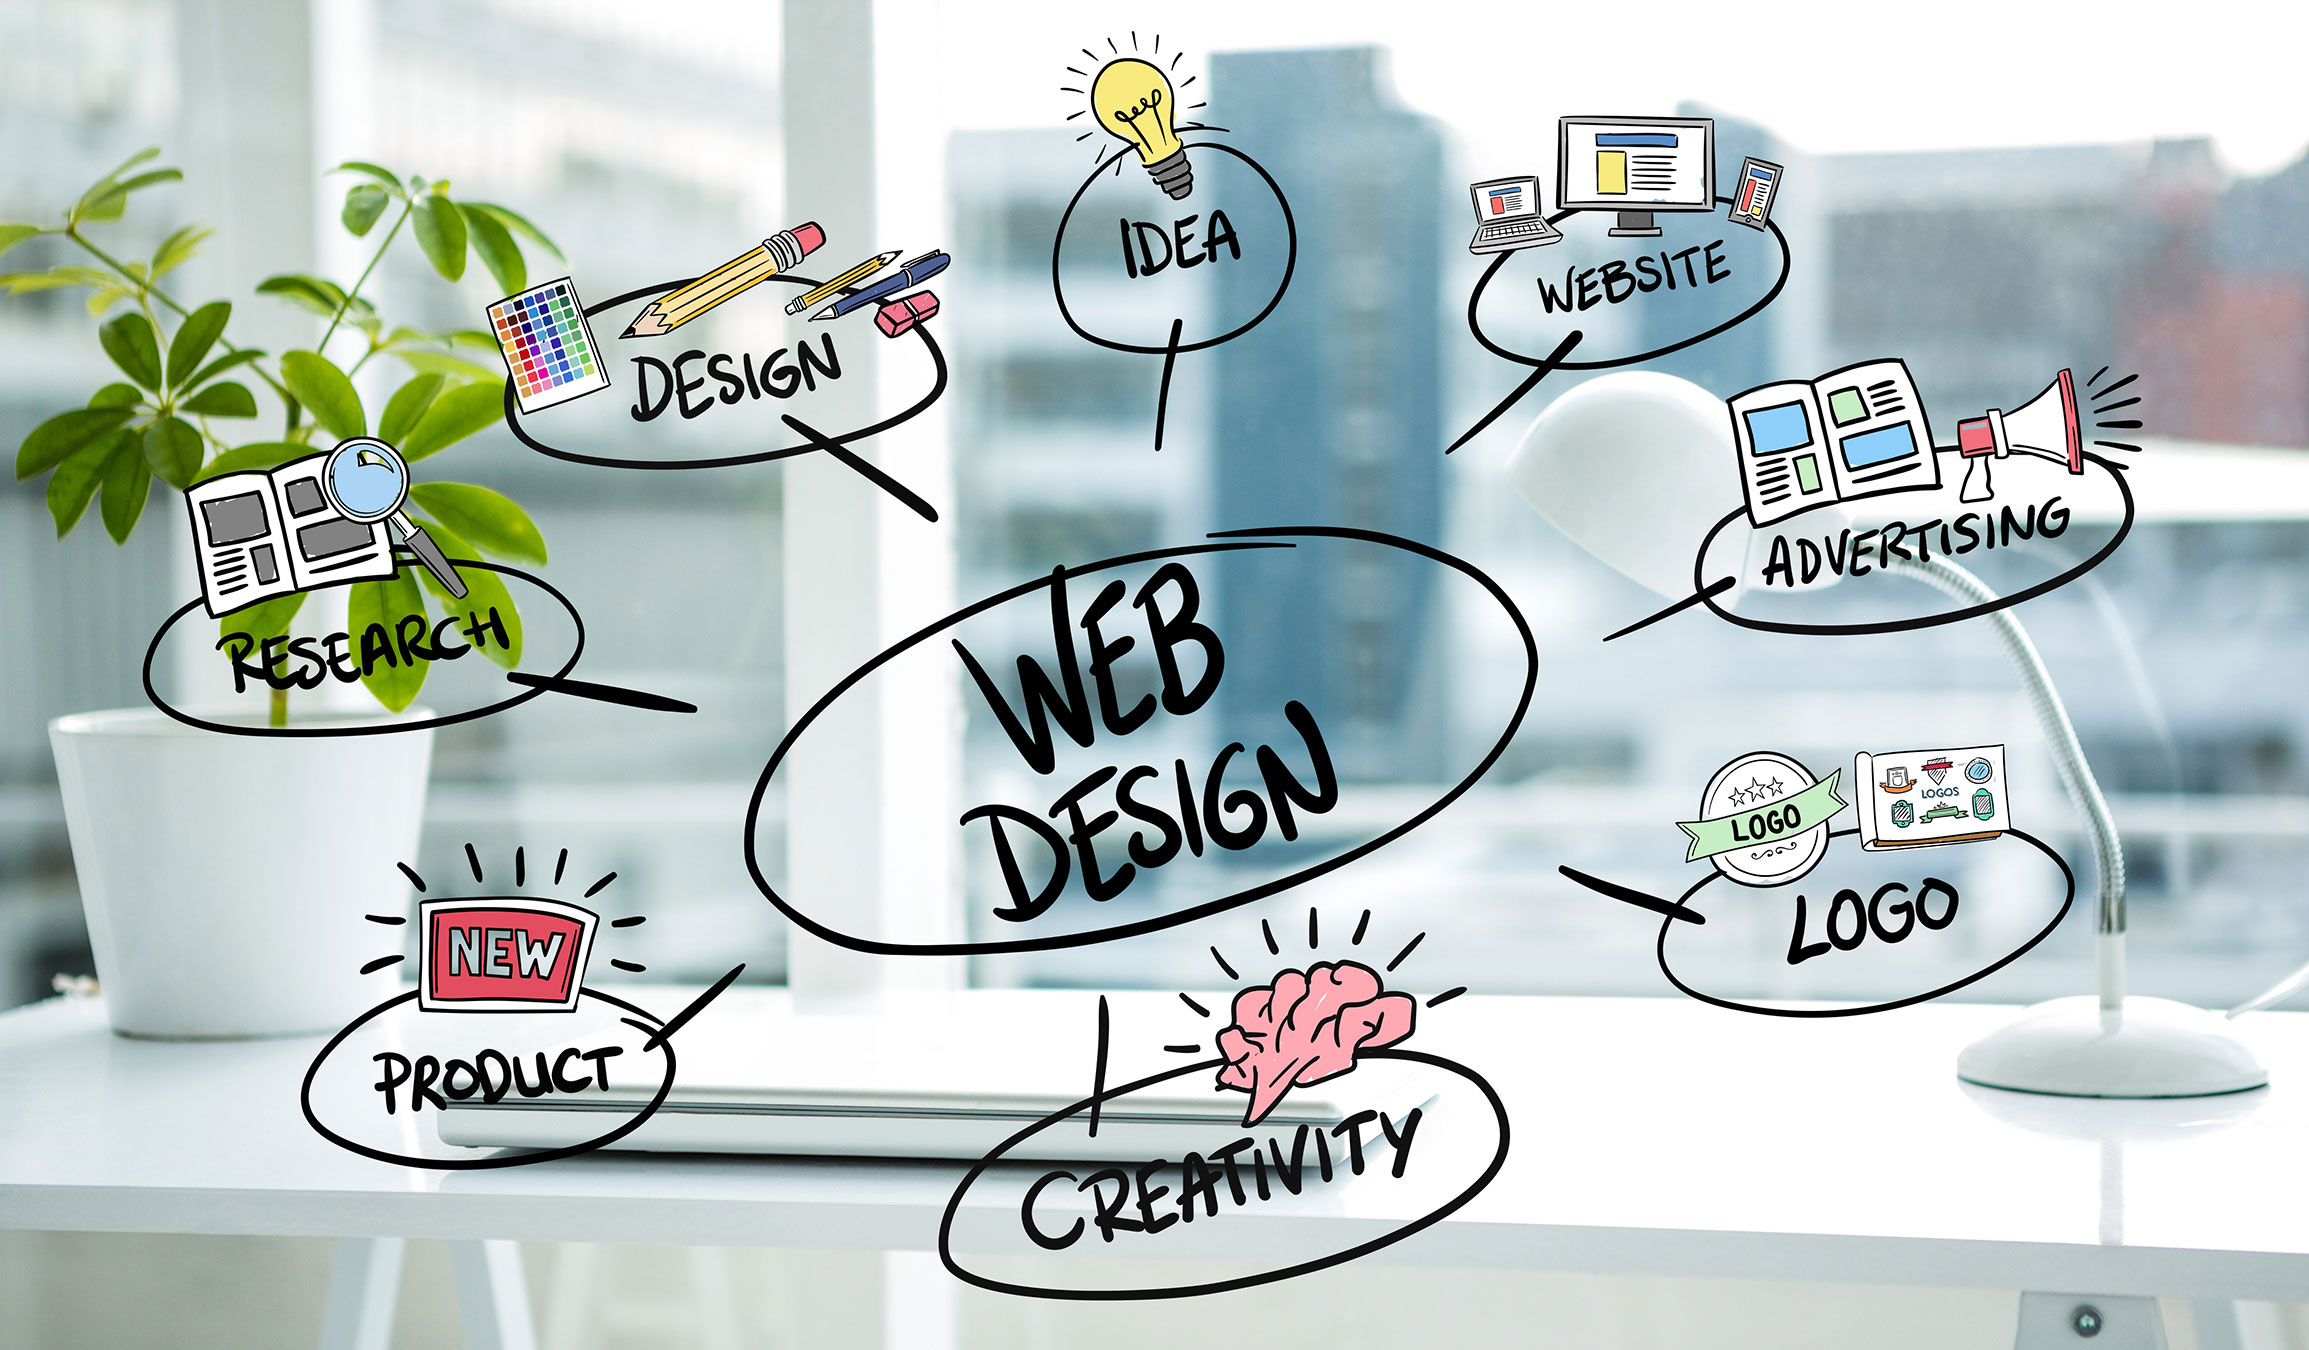 web design agency: website, logo, design, research, product, creativity, idea